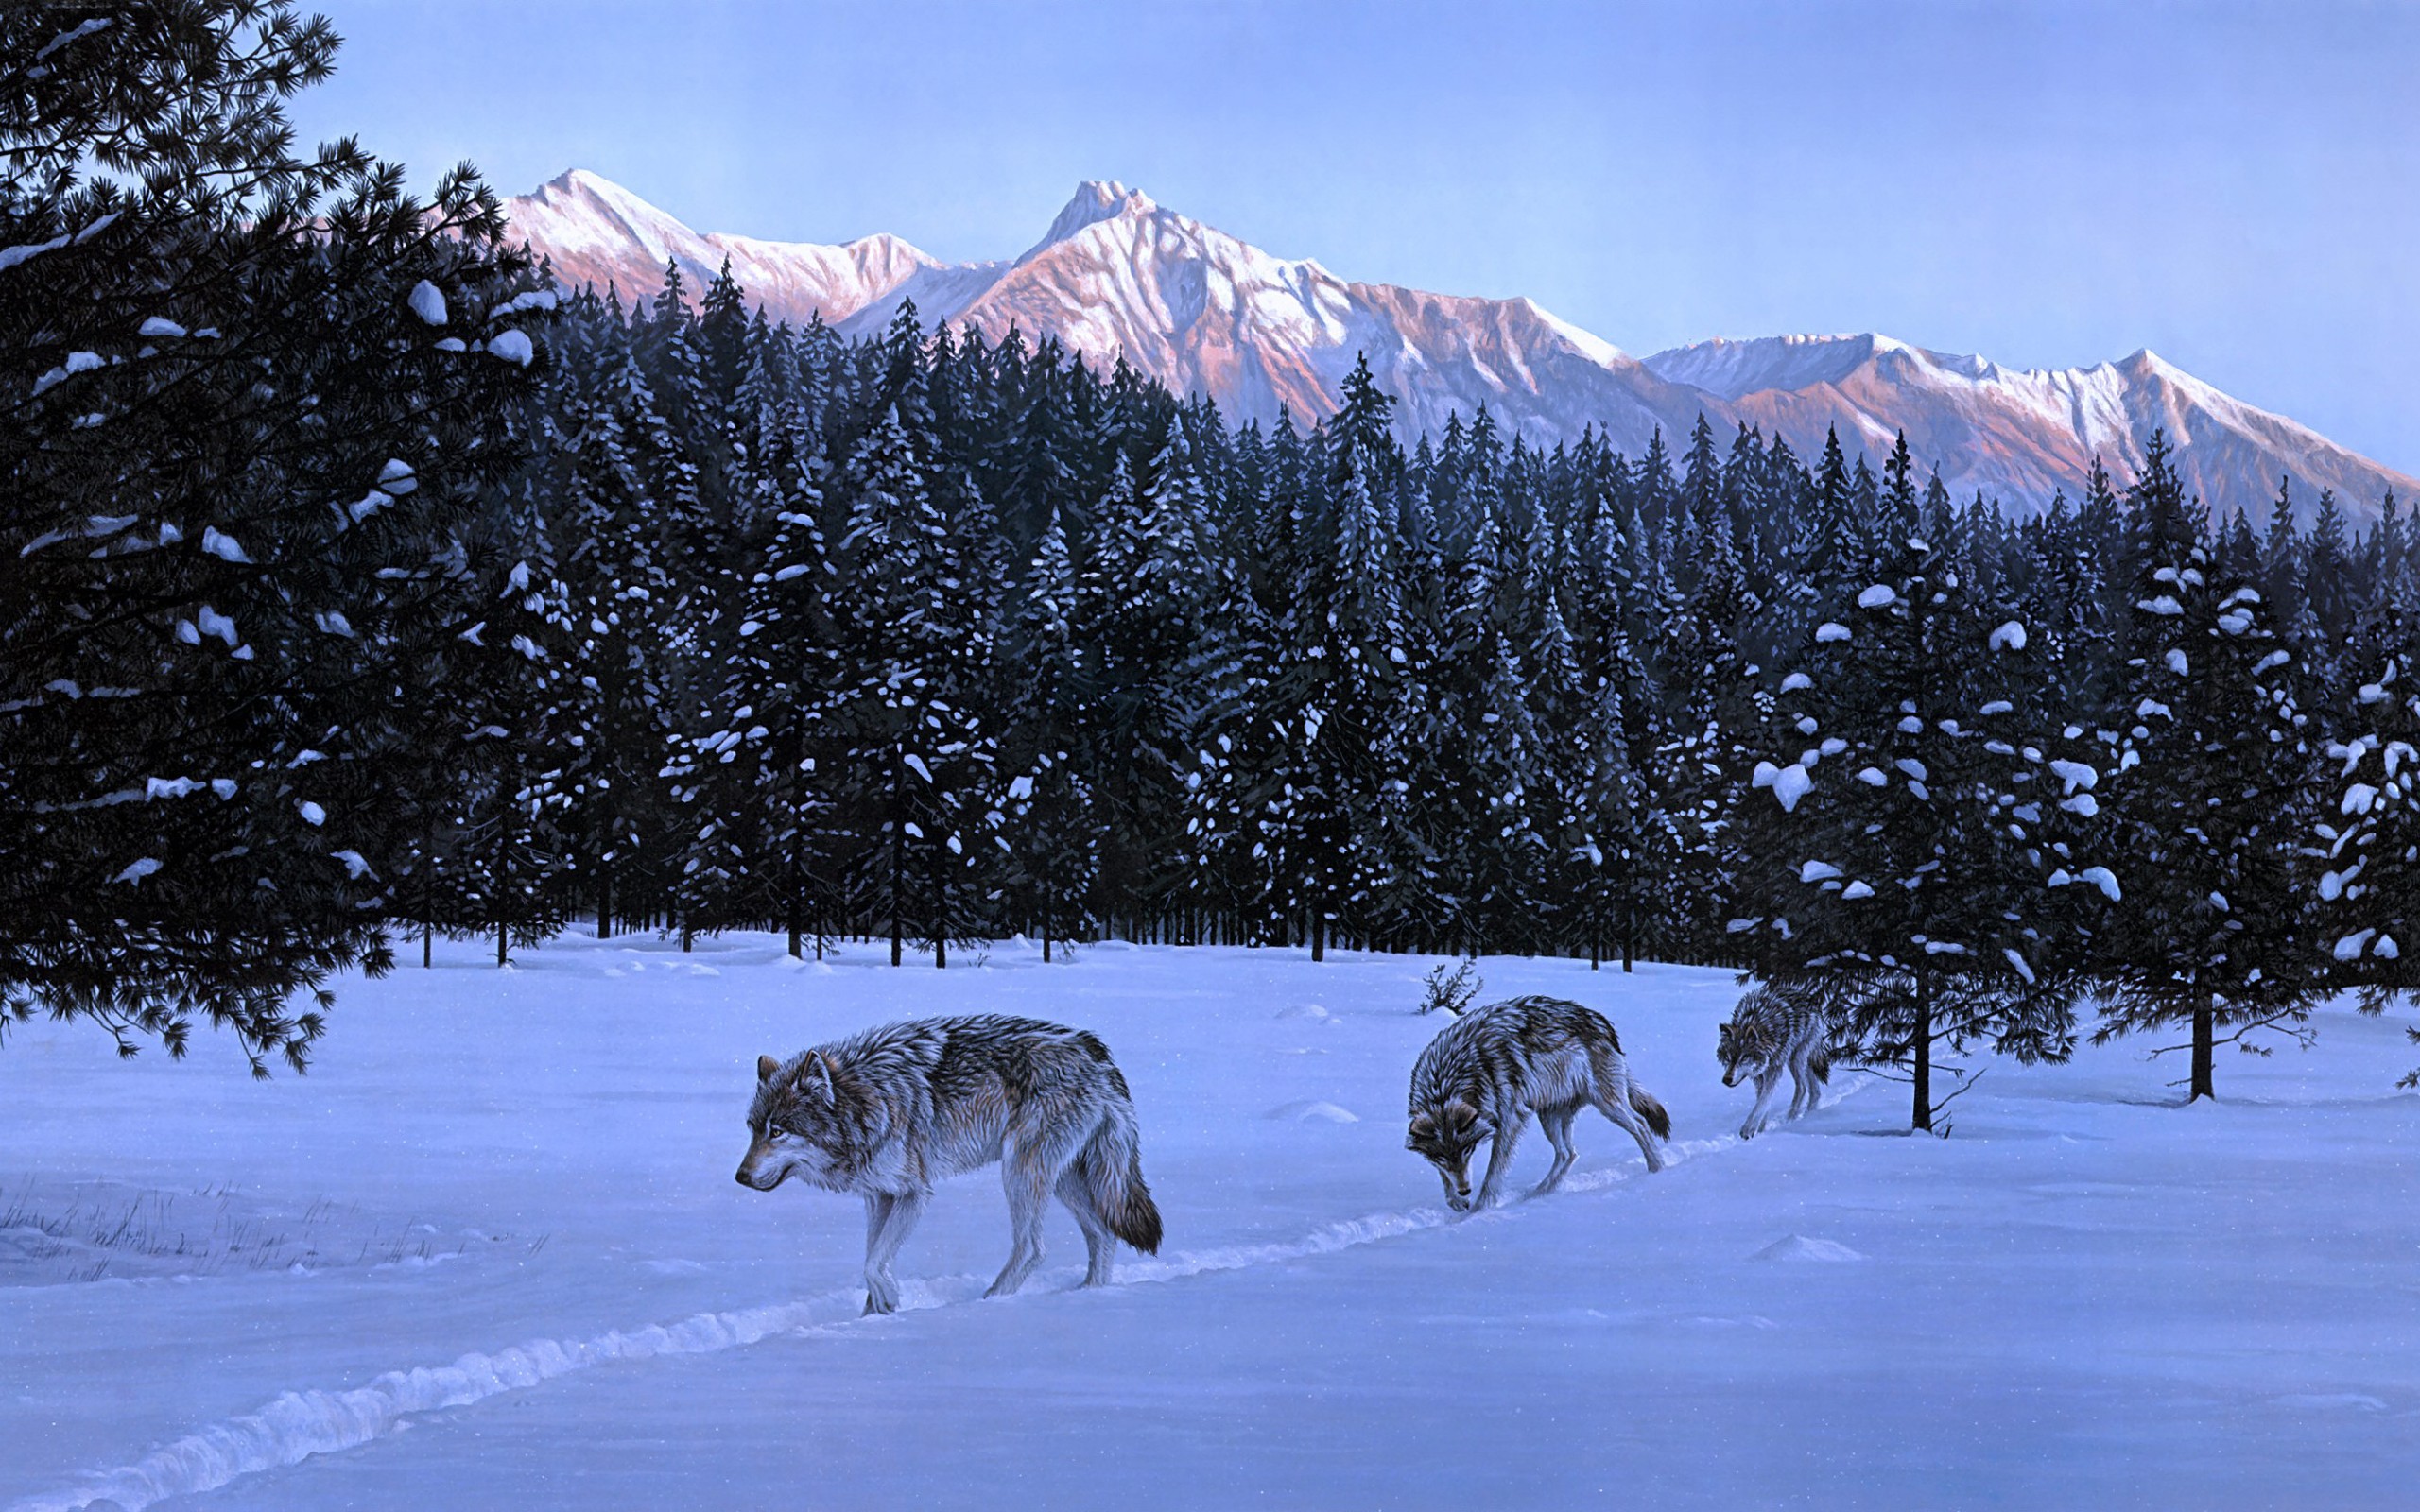 General 2560x1600 animals nature wolf mammals artwork snow winter mountains